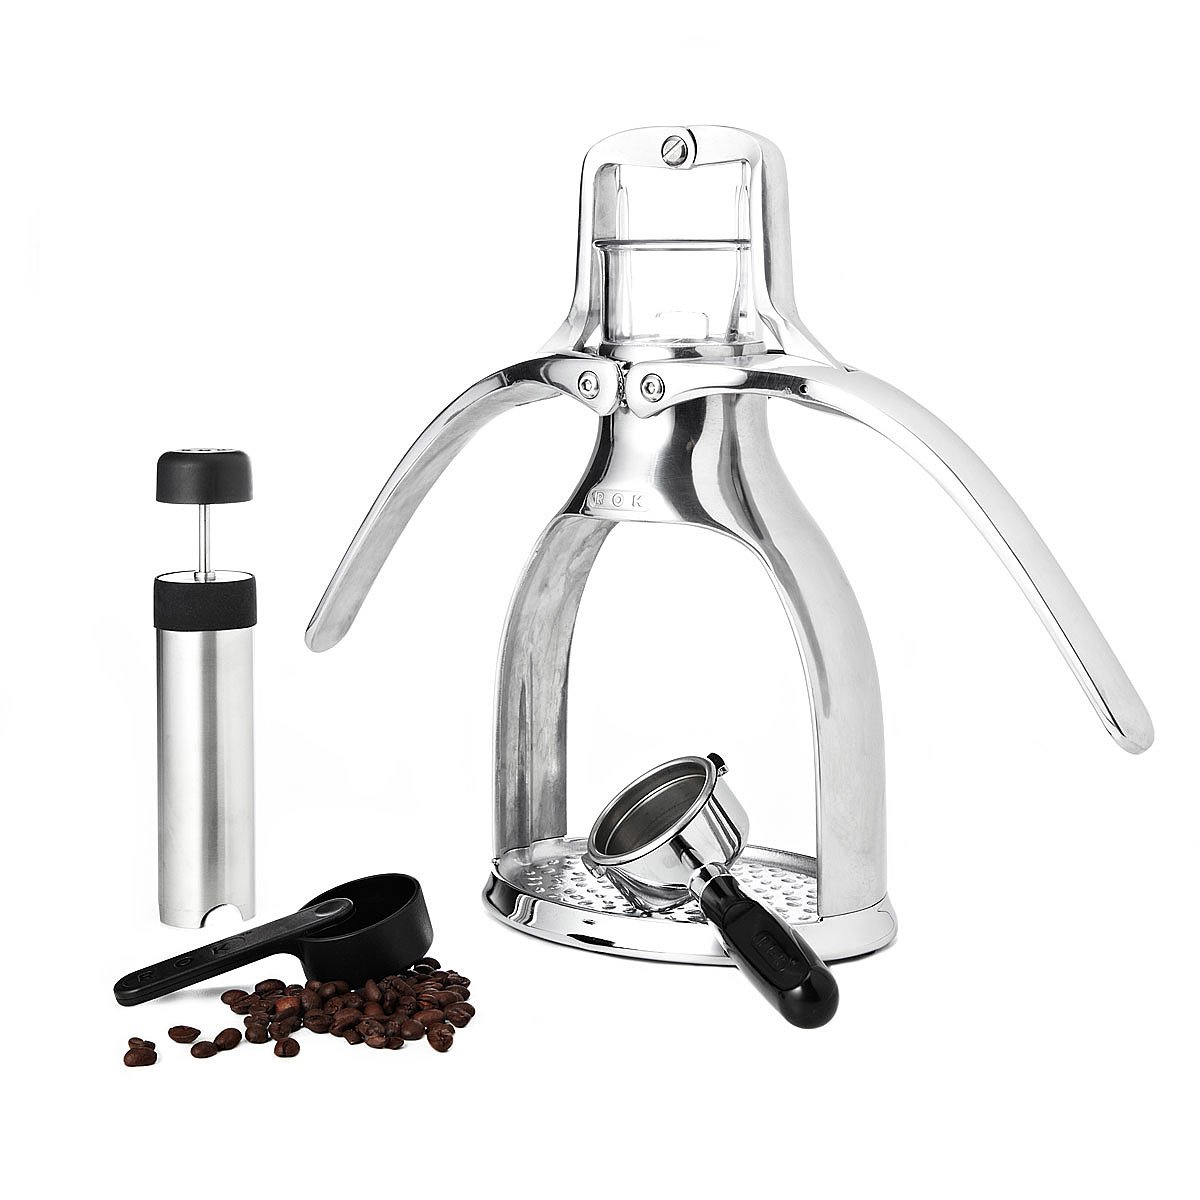 ROK Espresso Maker | Espresso Machine, no electricity, press